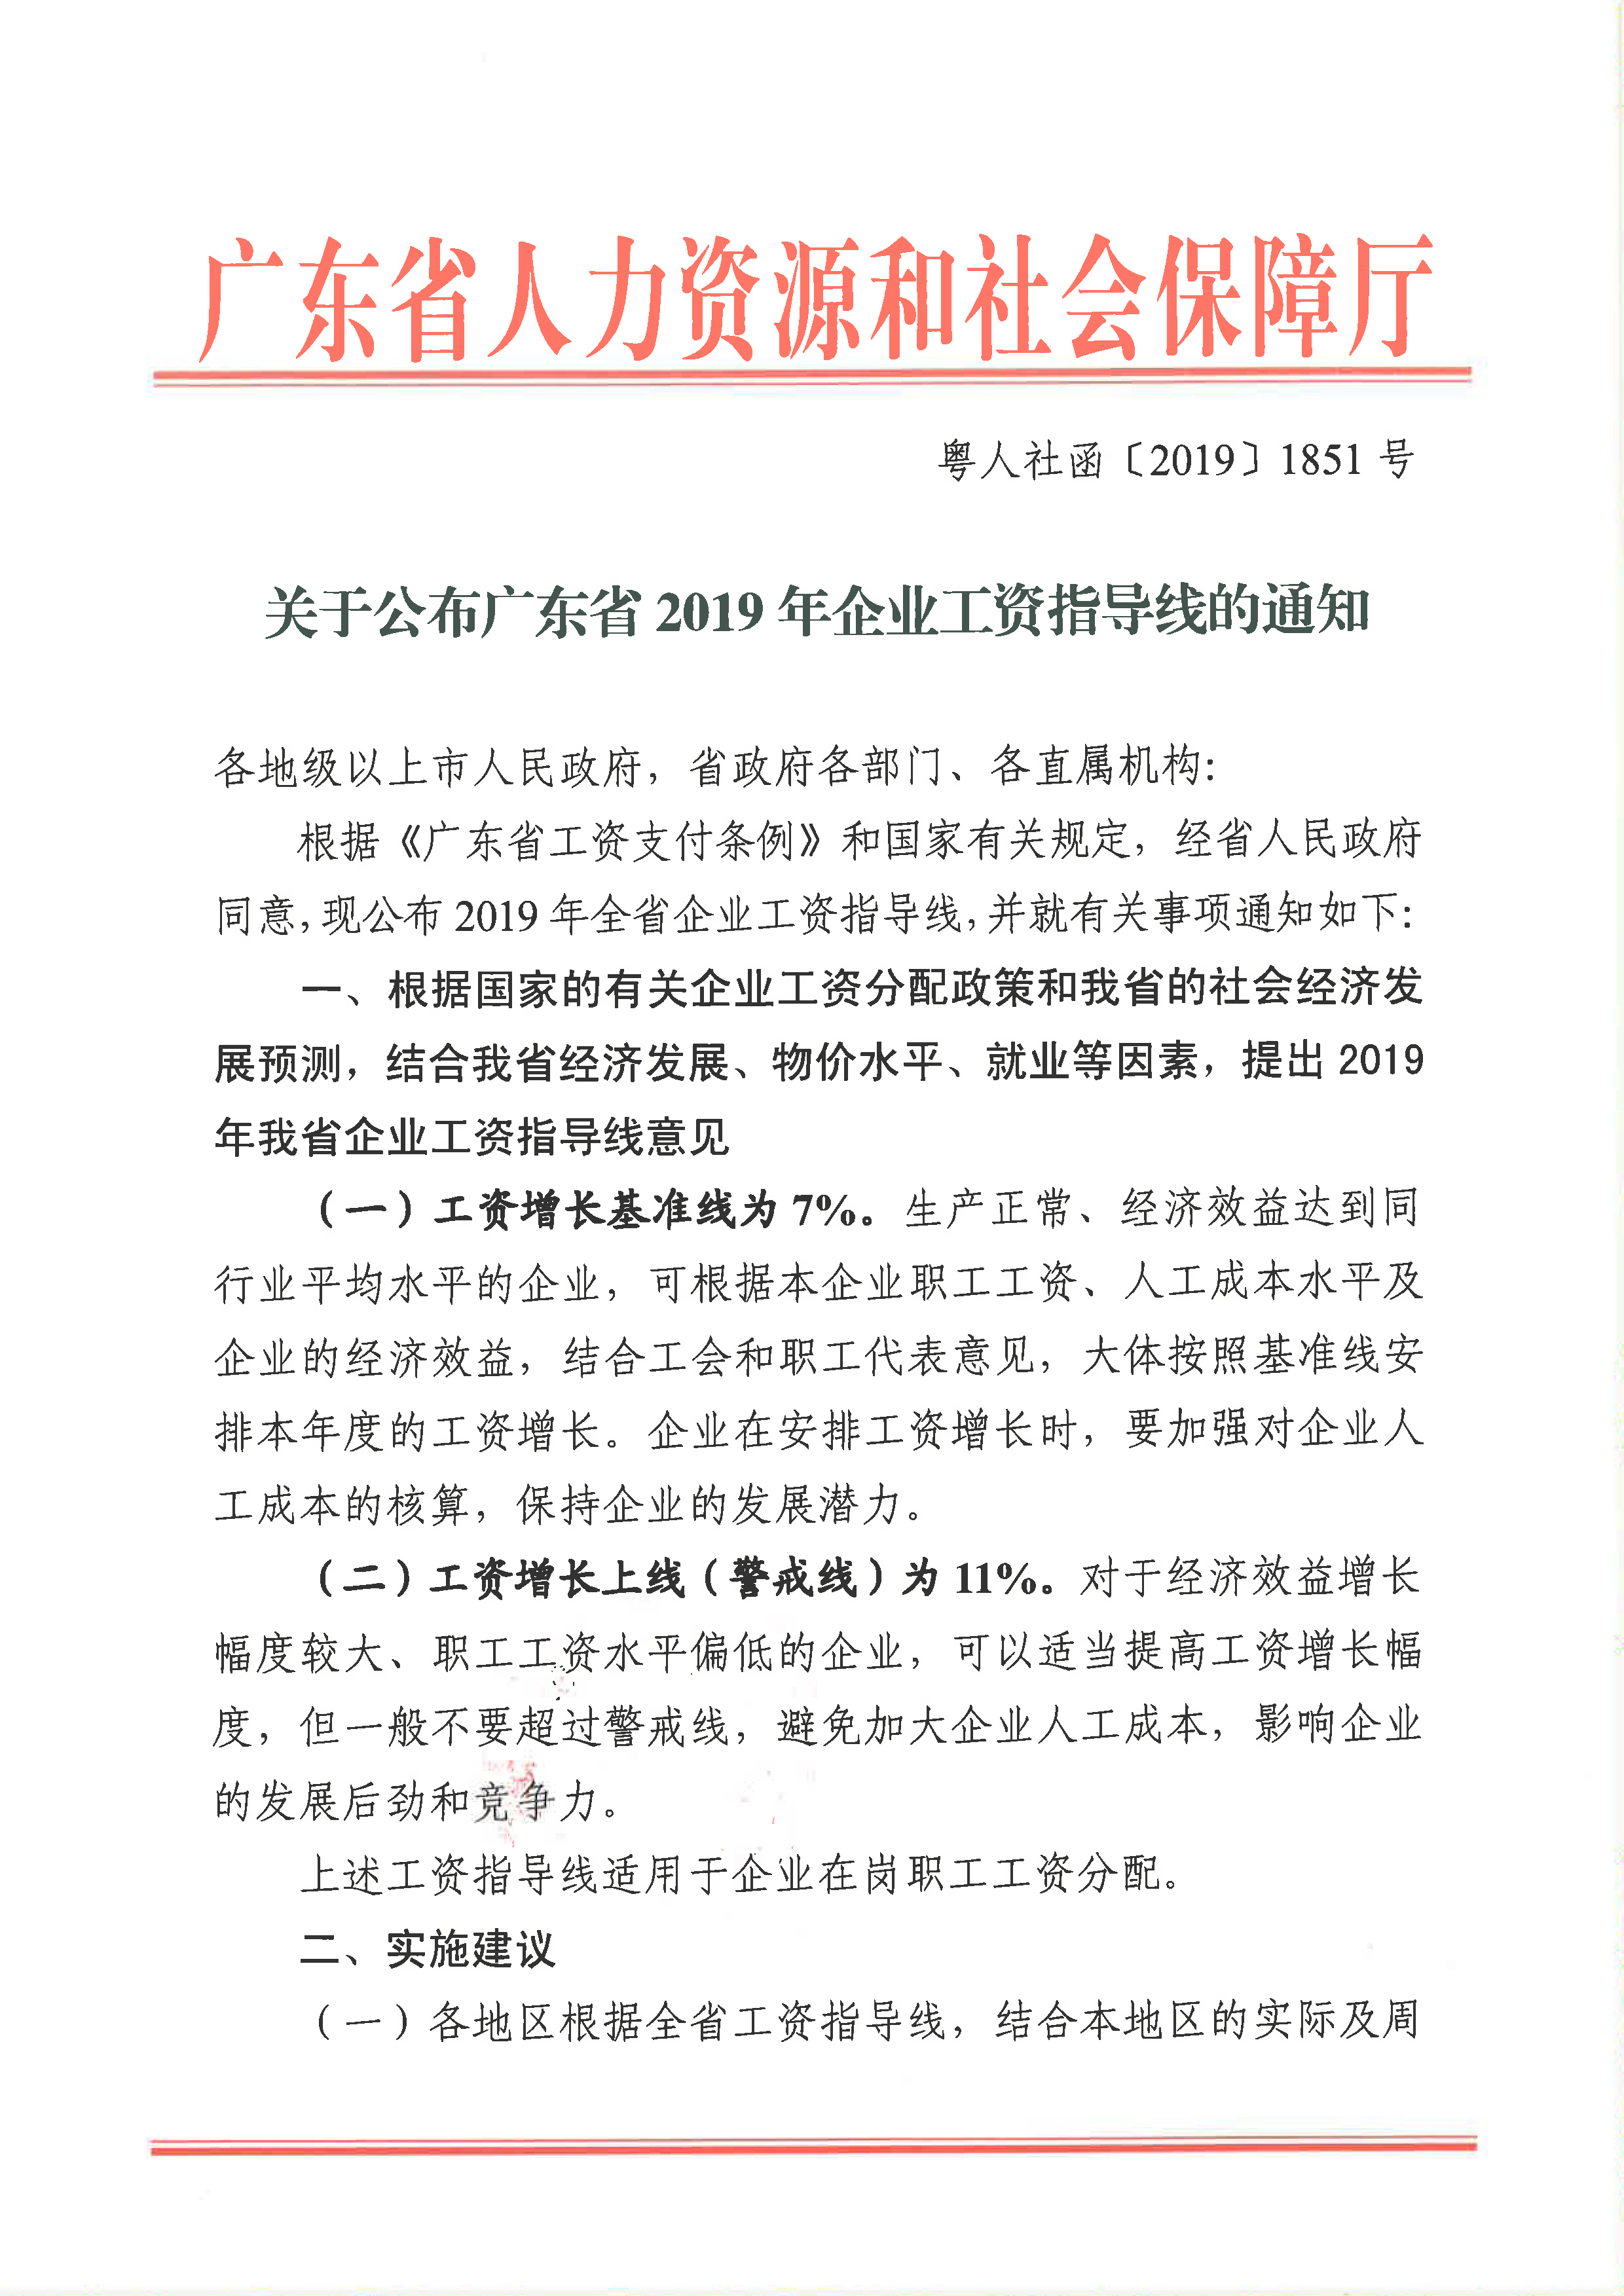 关于公布广东省2019年企业工资指导线的通知_页面_1.png